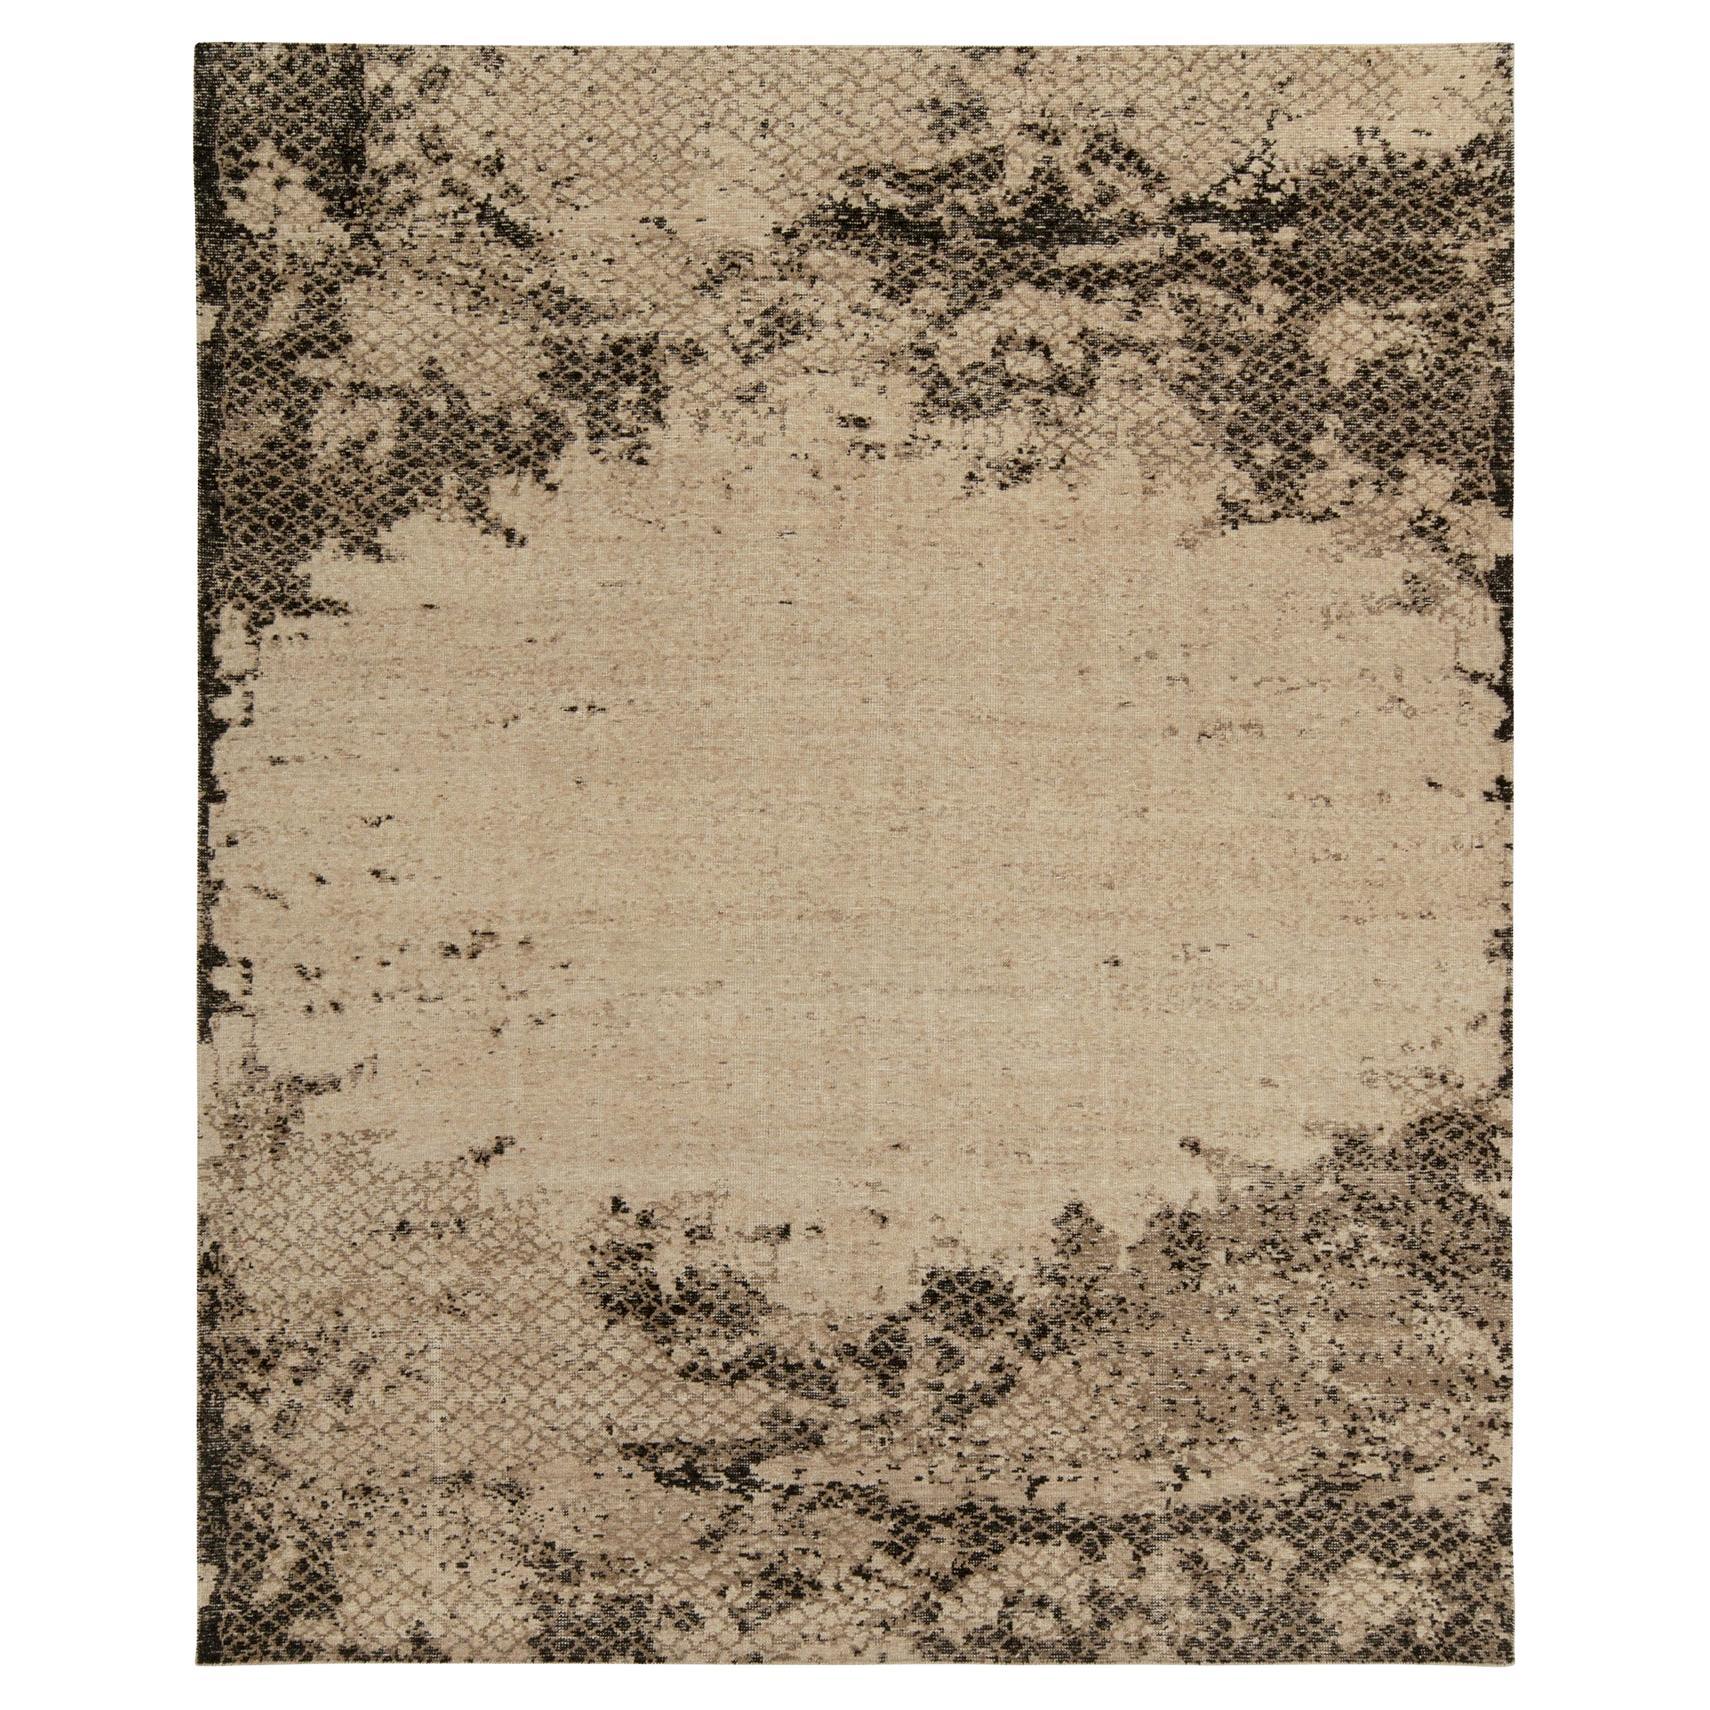 Rug & Kilim's Distressed Style Teppich in Beige / Brown, Schwarz